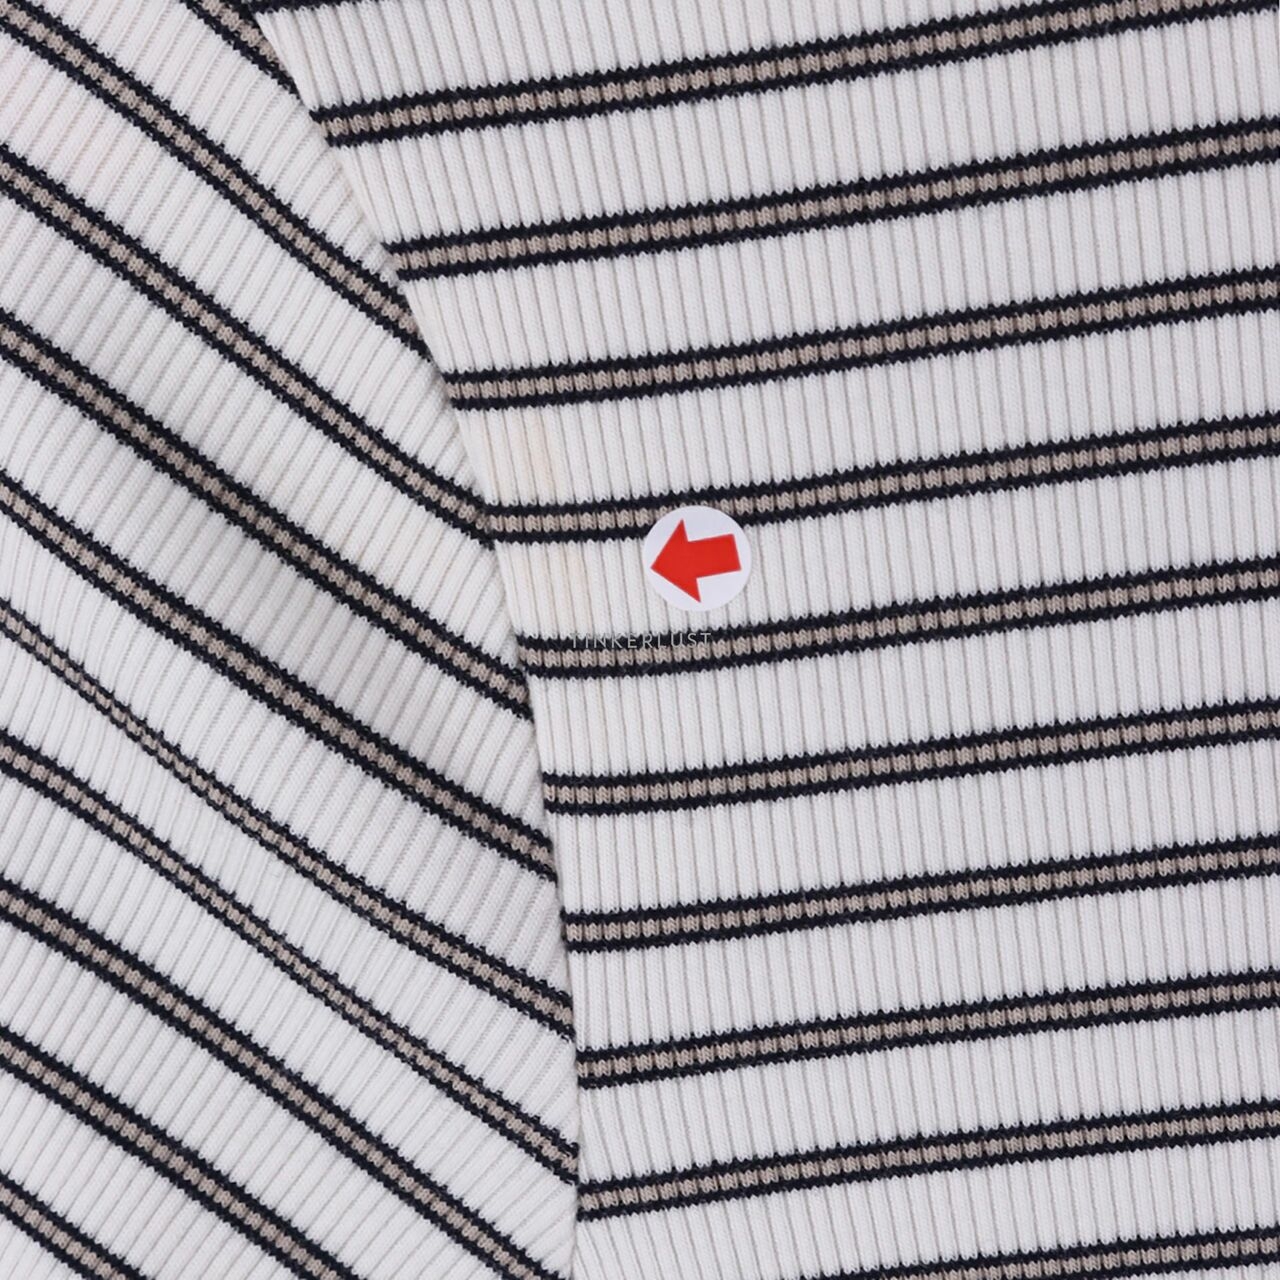 UNIQLO White Stripes Knit T-Shirt